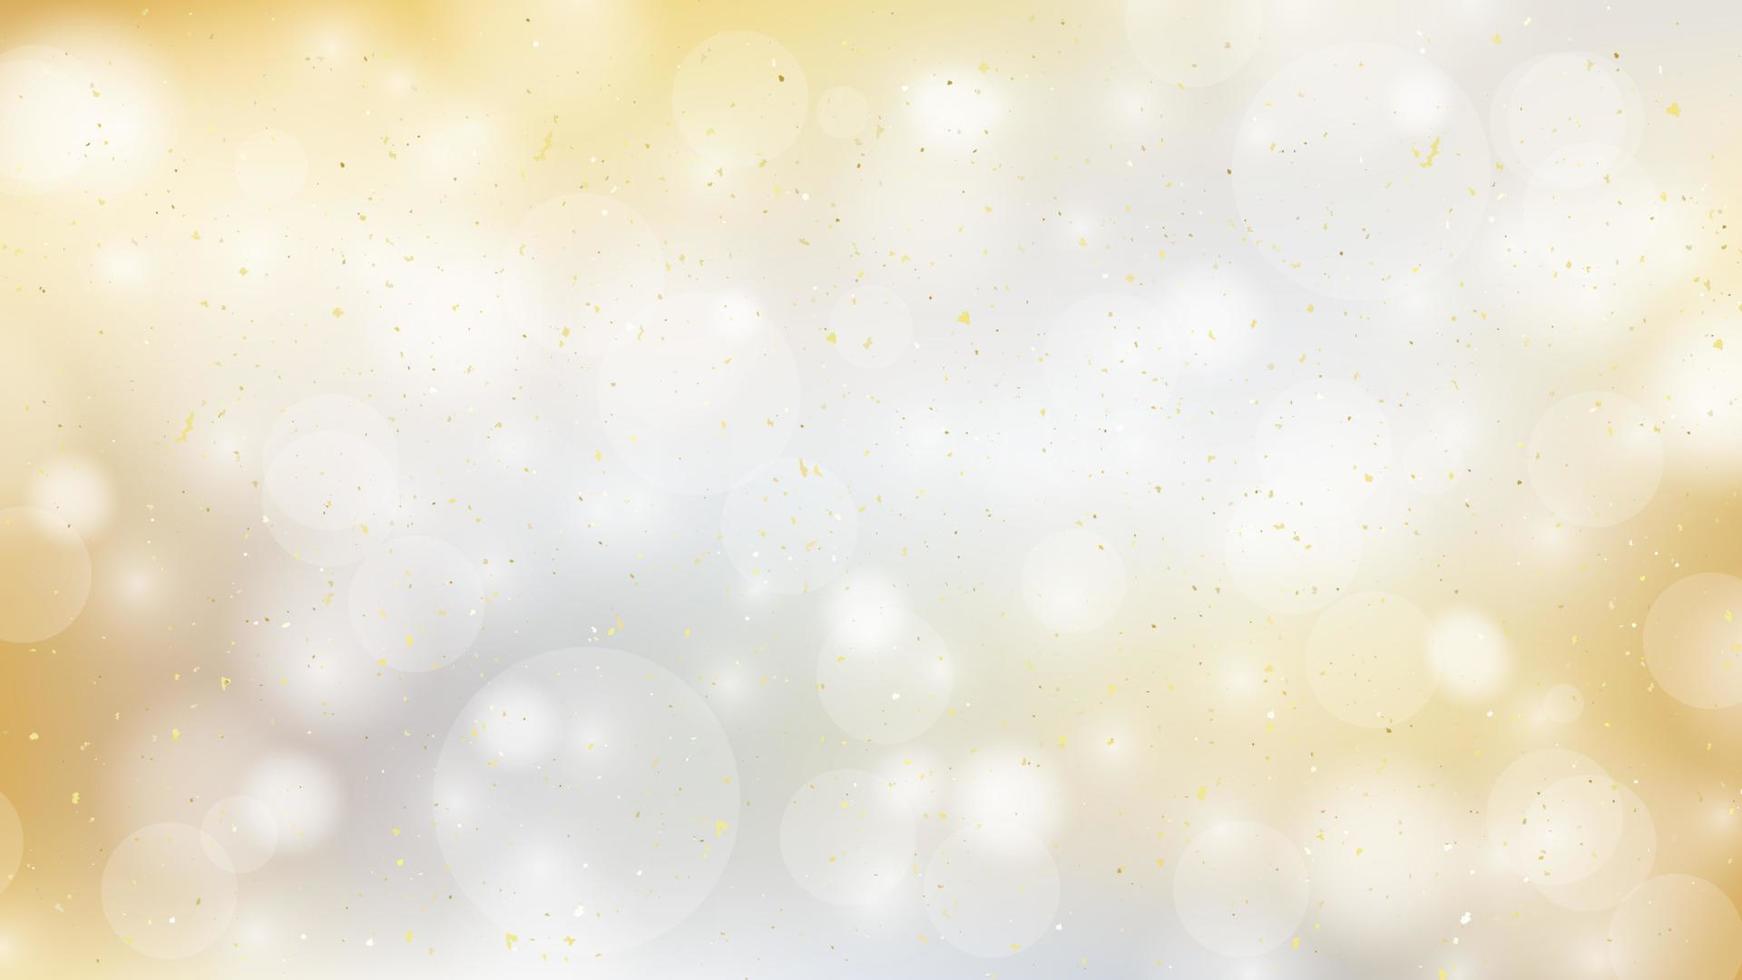 Boas festas e um fundo de vetor de ano novo próspero em formato eps10 com bokeh realista e glitter dourado